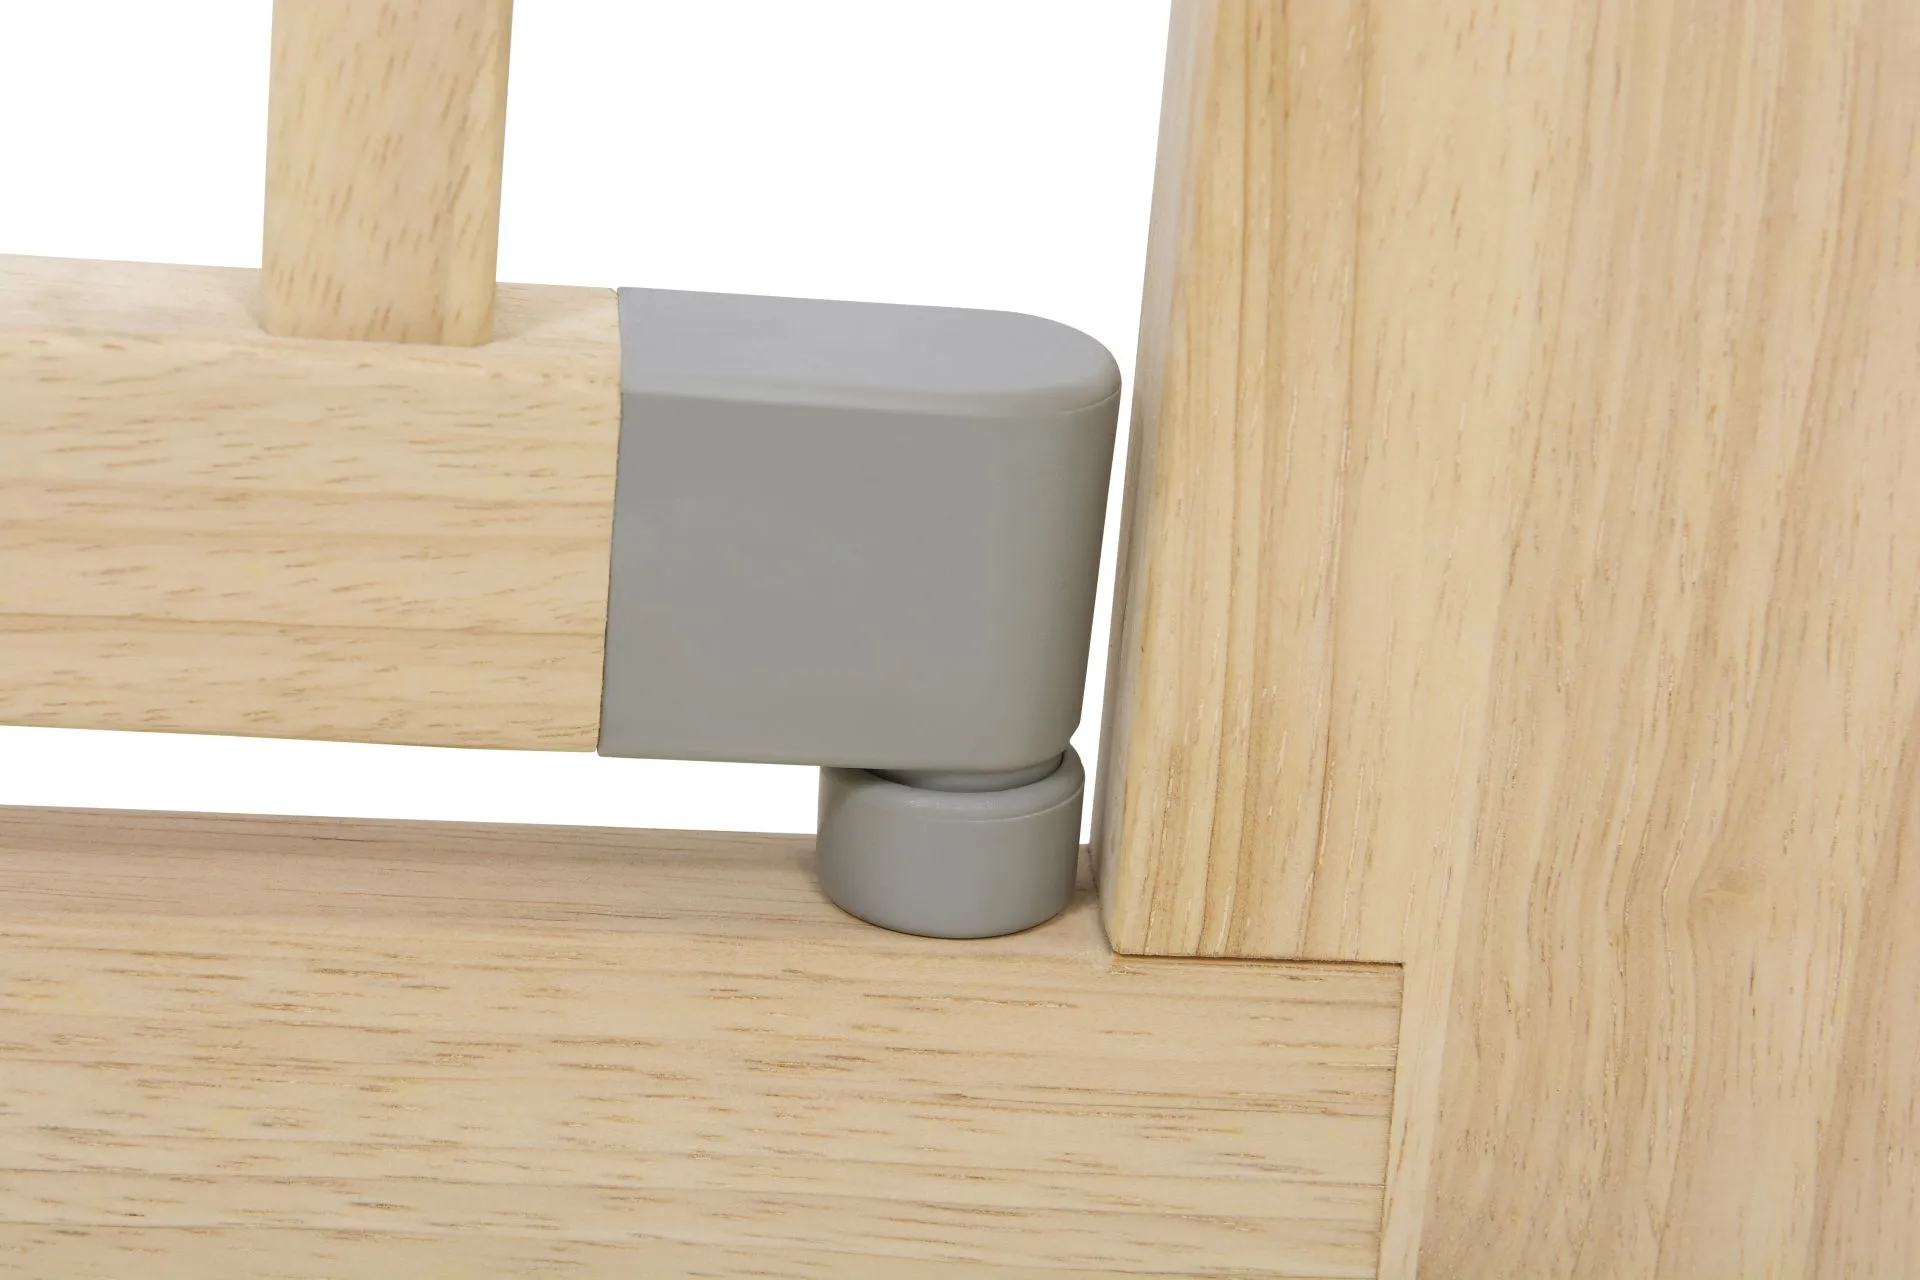 Türschutzgitter 2712 zum Klemmen für Öffnungen von 73.5-97 cm aus Holz